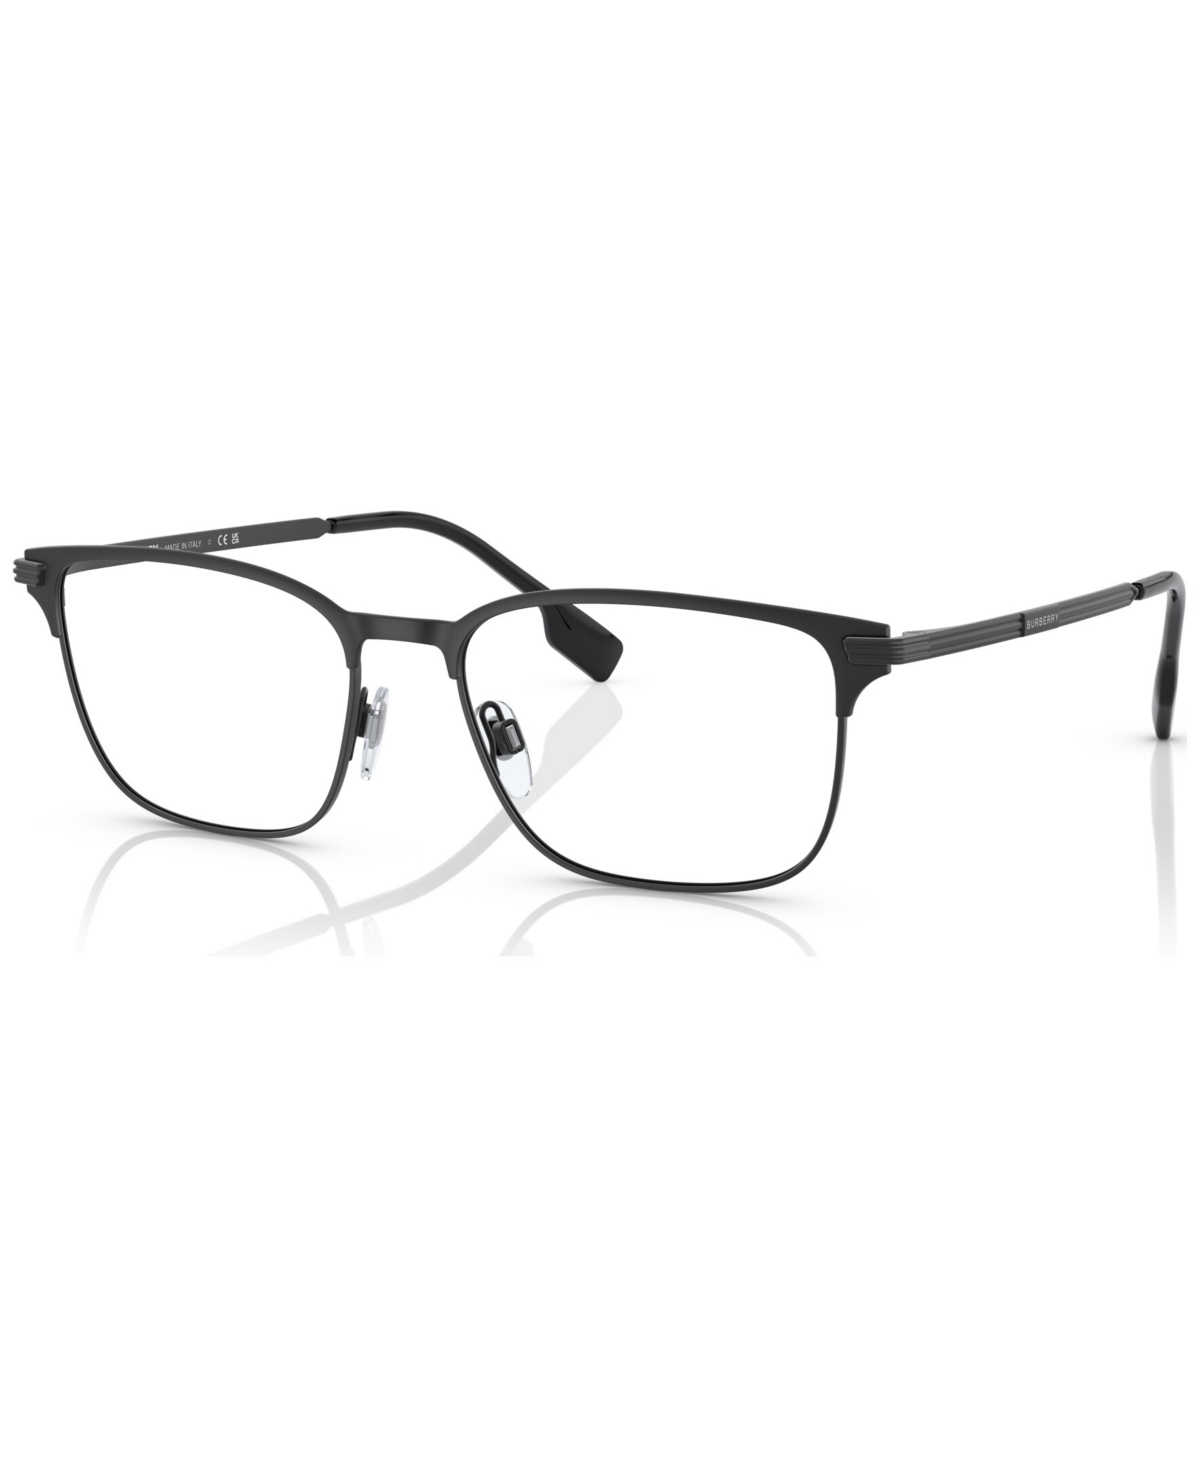 Men's Rectangle Eyeglasses, BE137257-o - Black